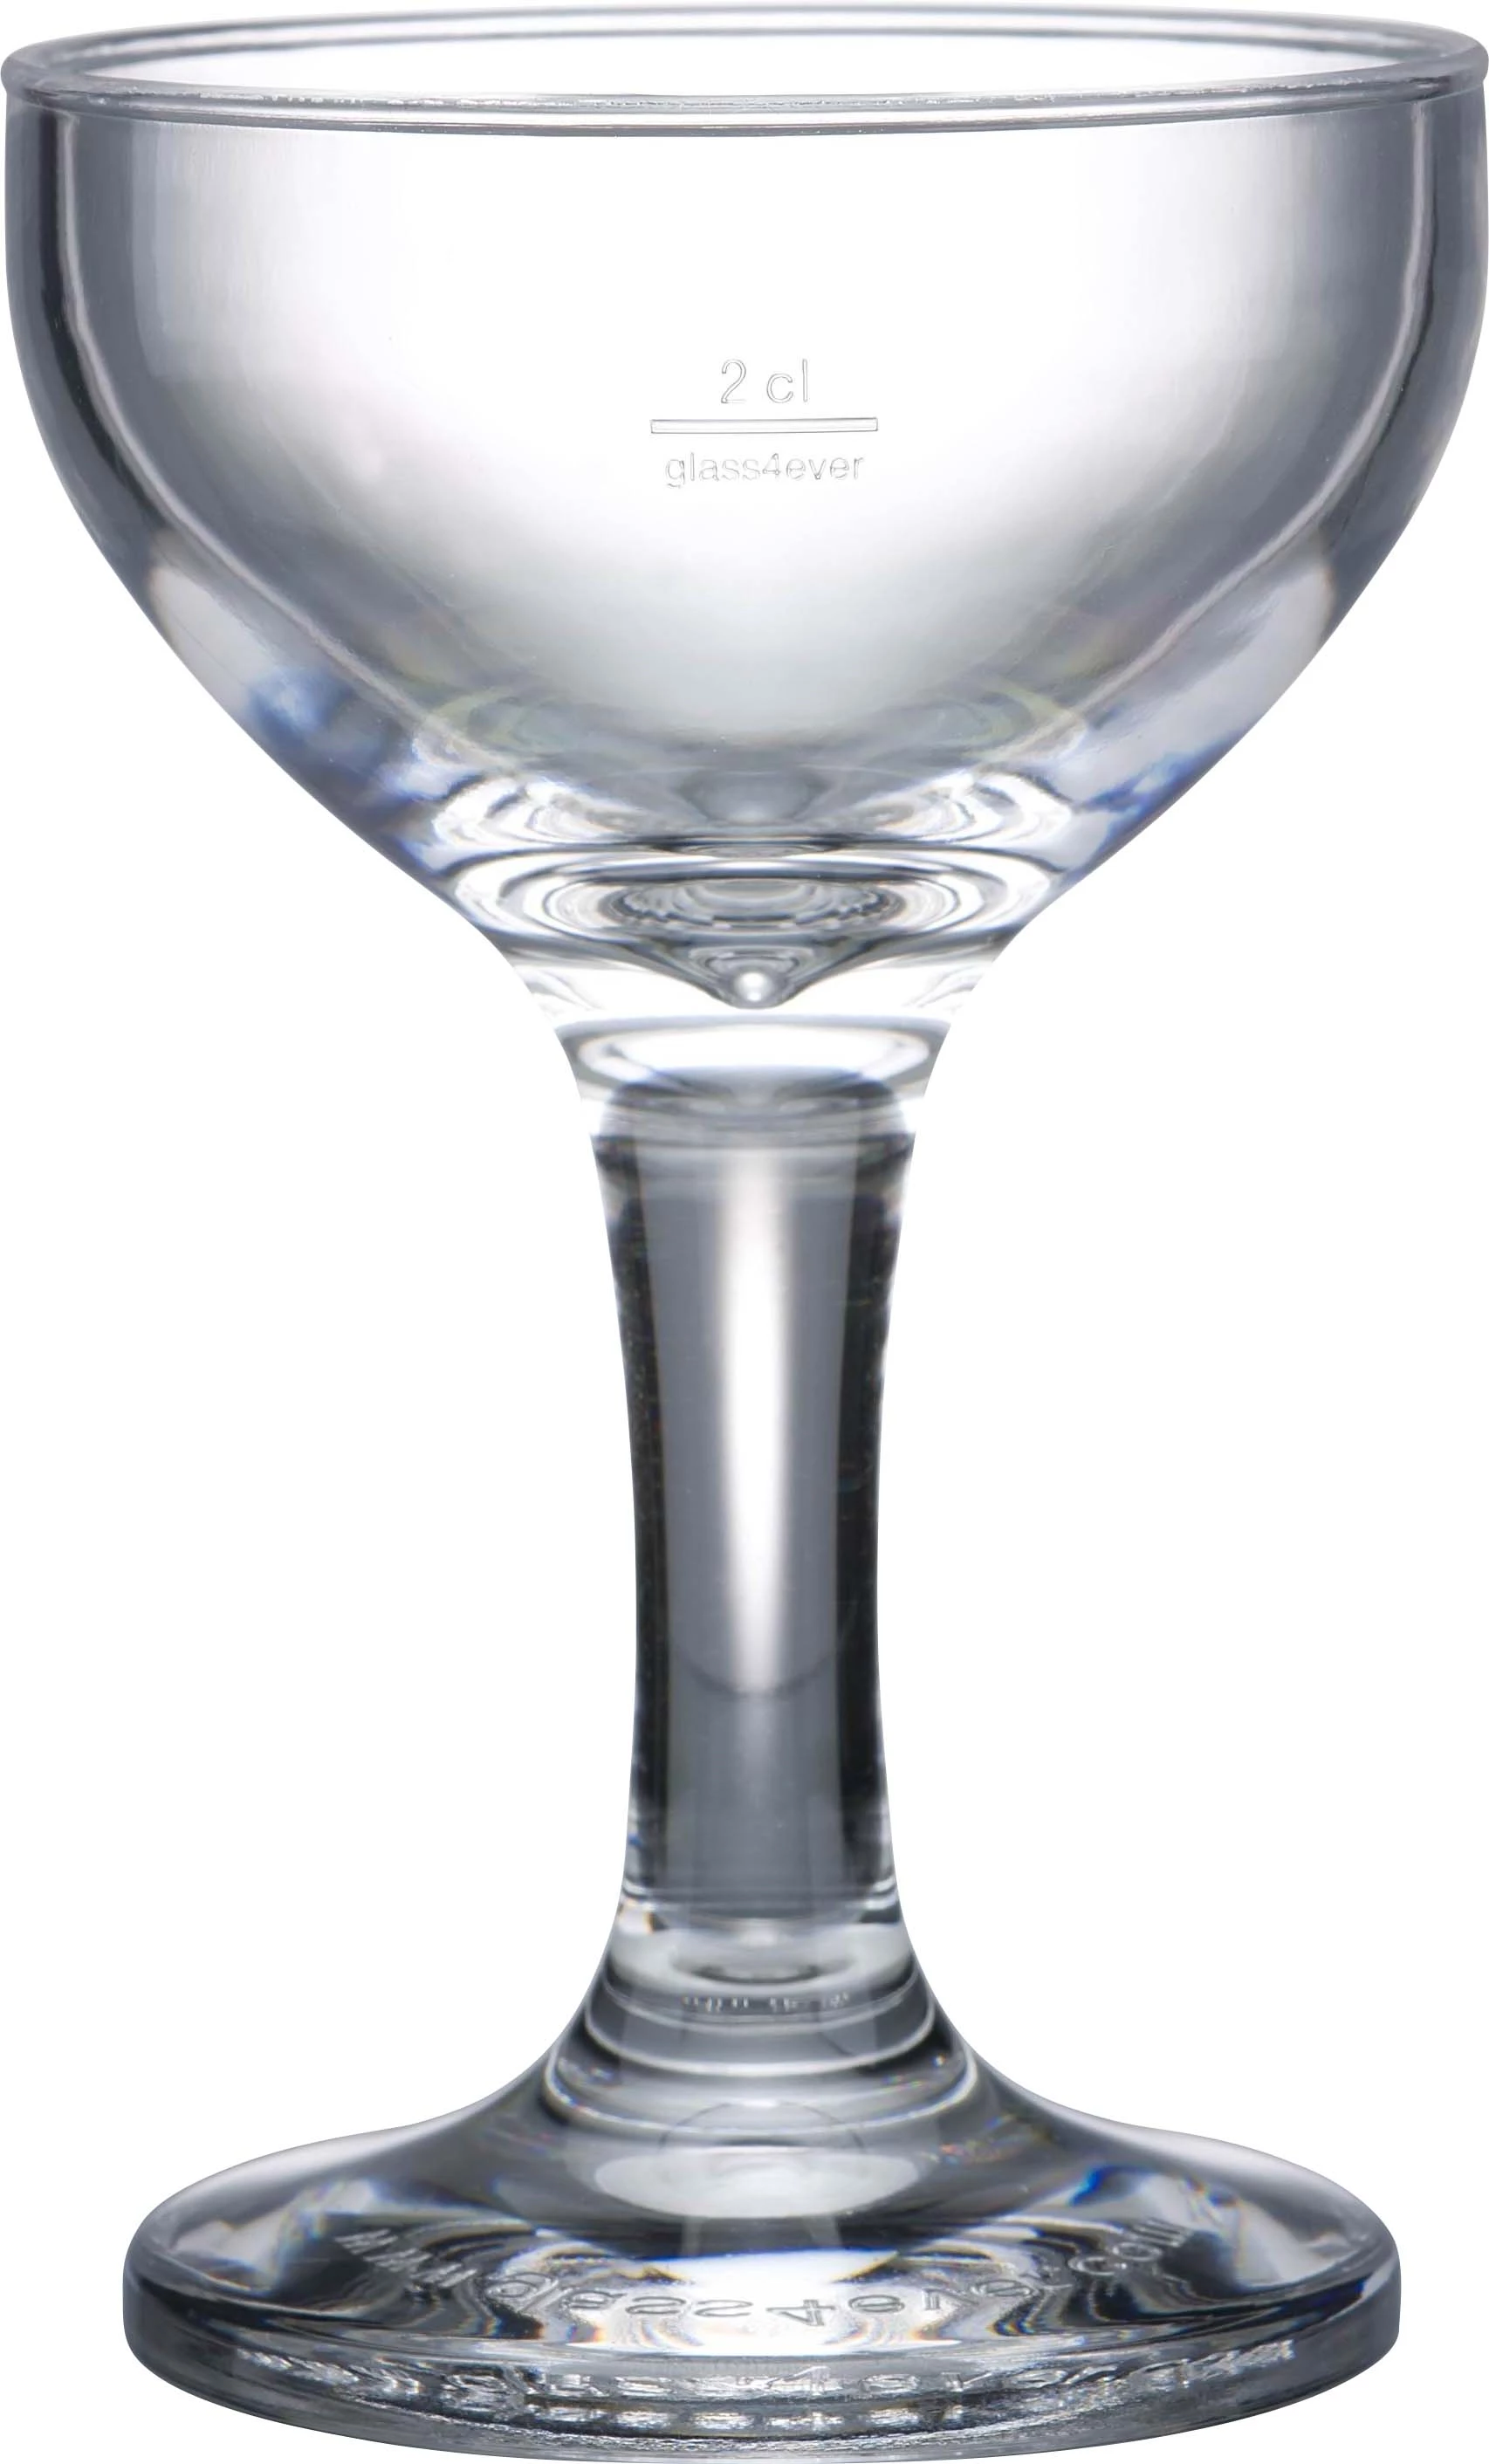 GlassFORever Svinger glas, 2/4 cl